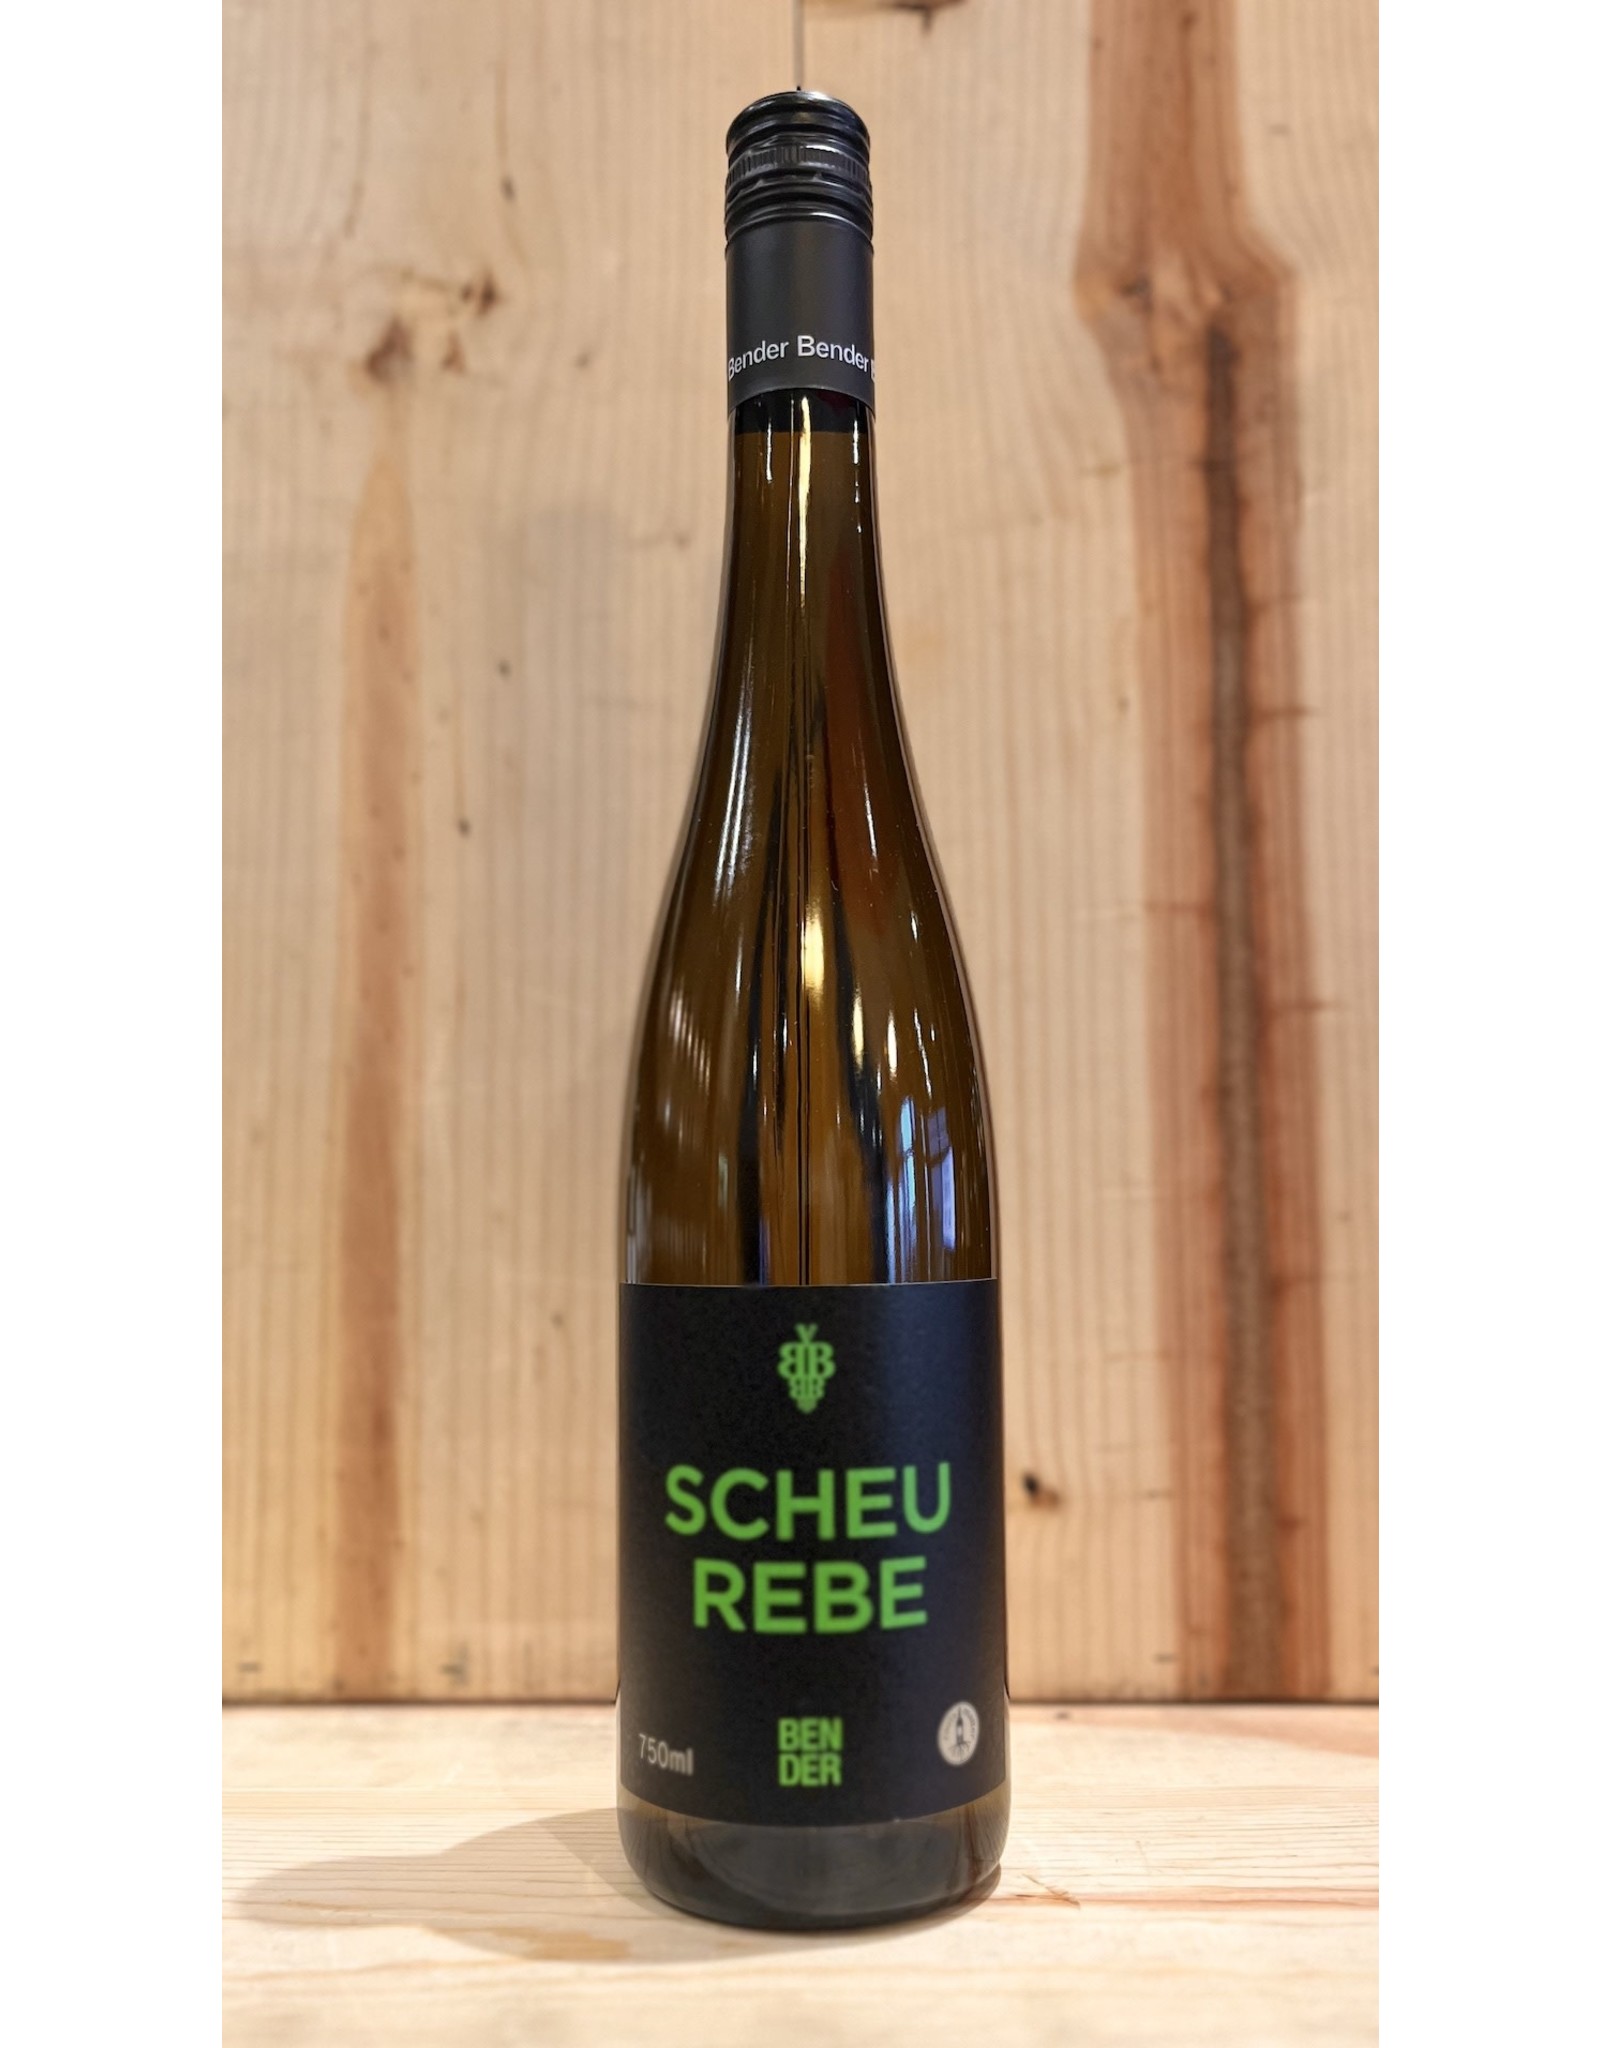 Wine Andreas Bender Scheurebe